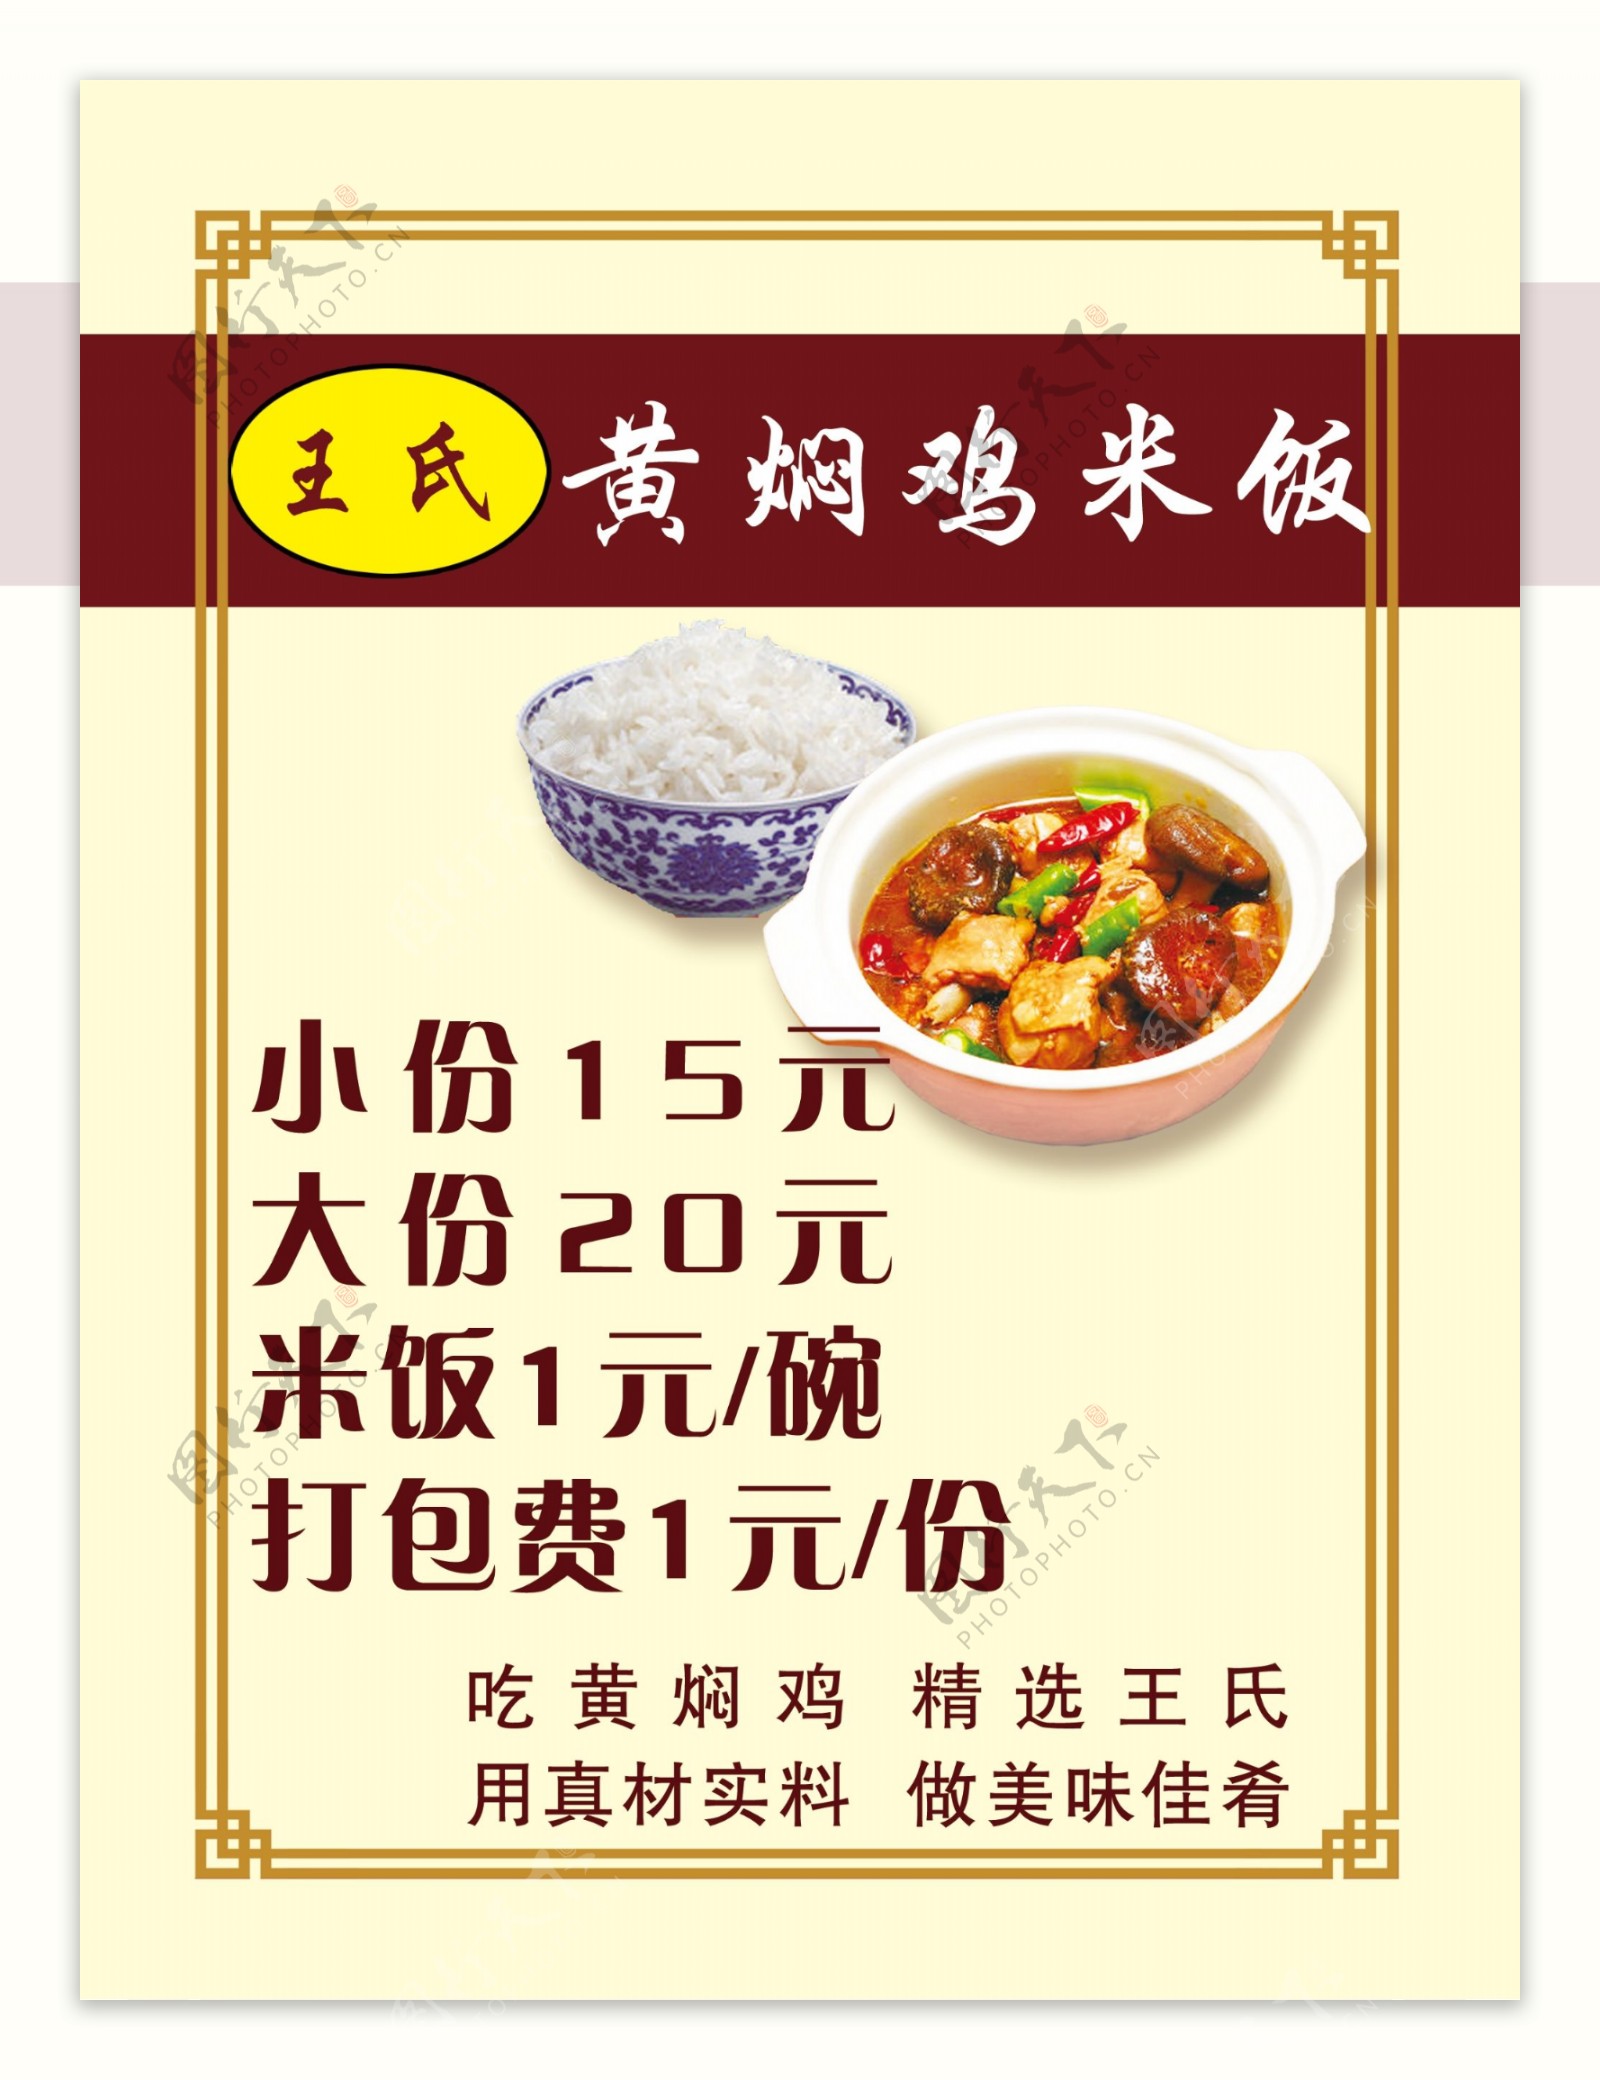 王氏黄焖鸡米饭价格表图片